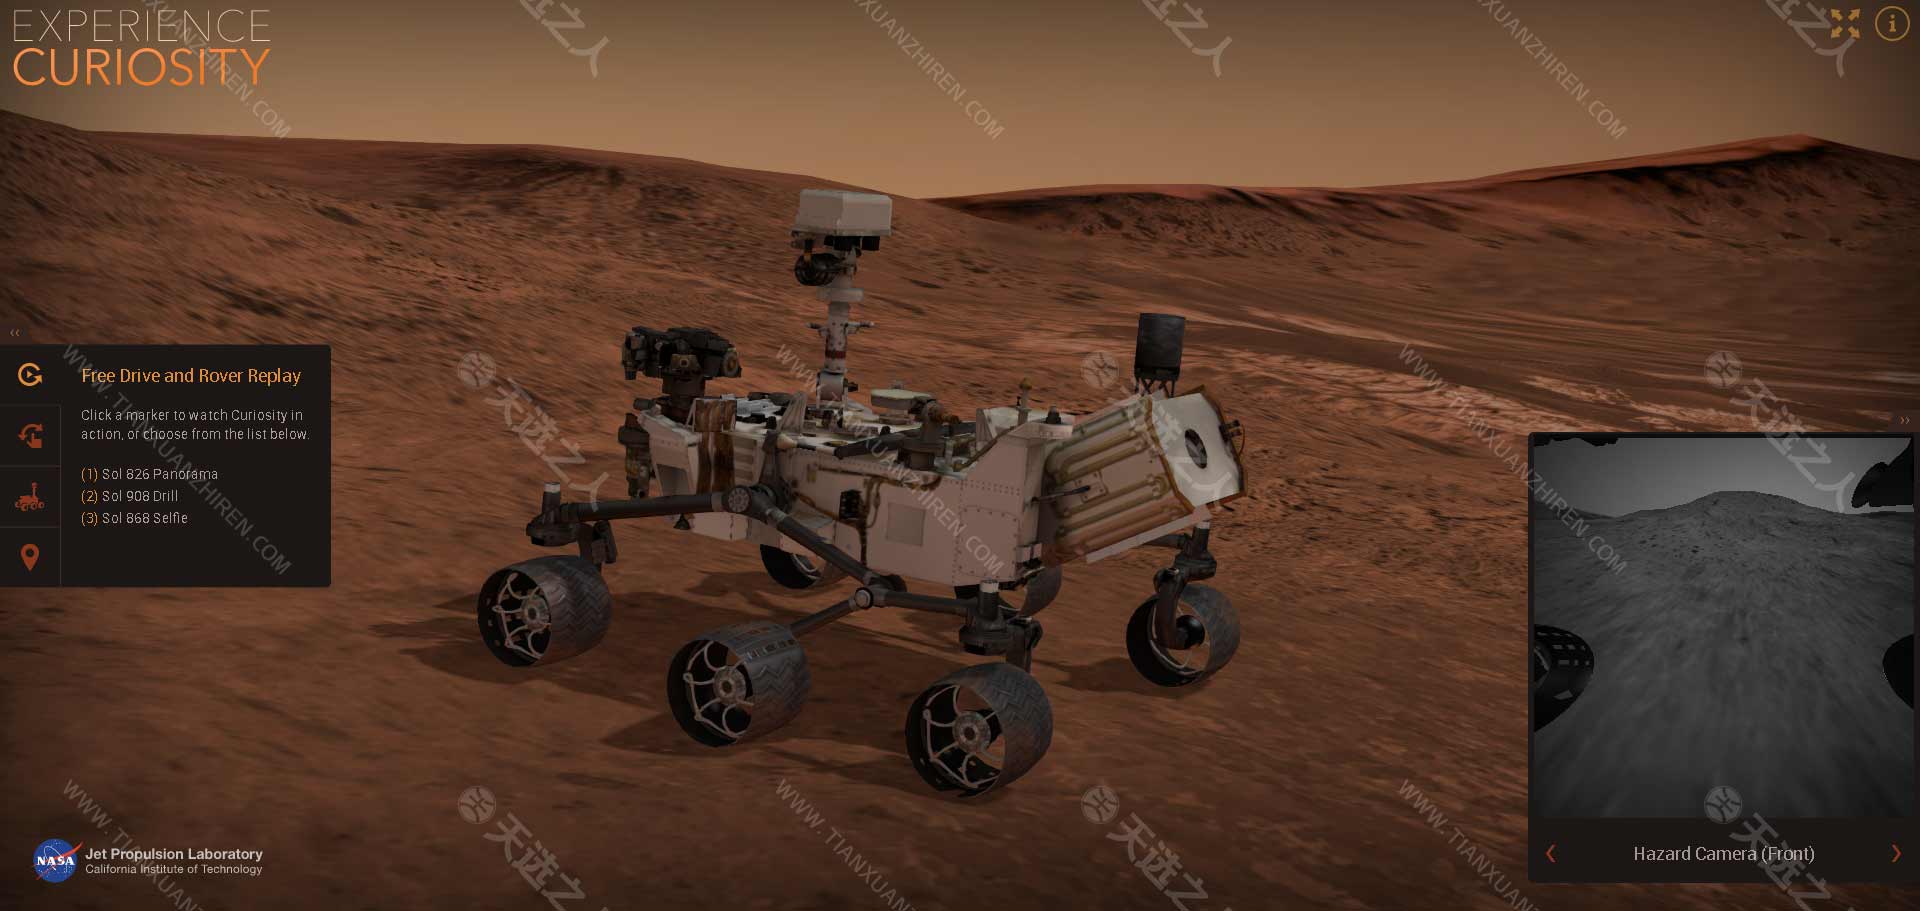 NASA的喷气推进实验室发行的火星车网页-体验好奇心